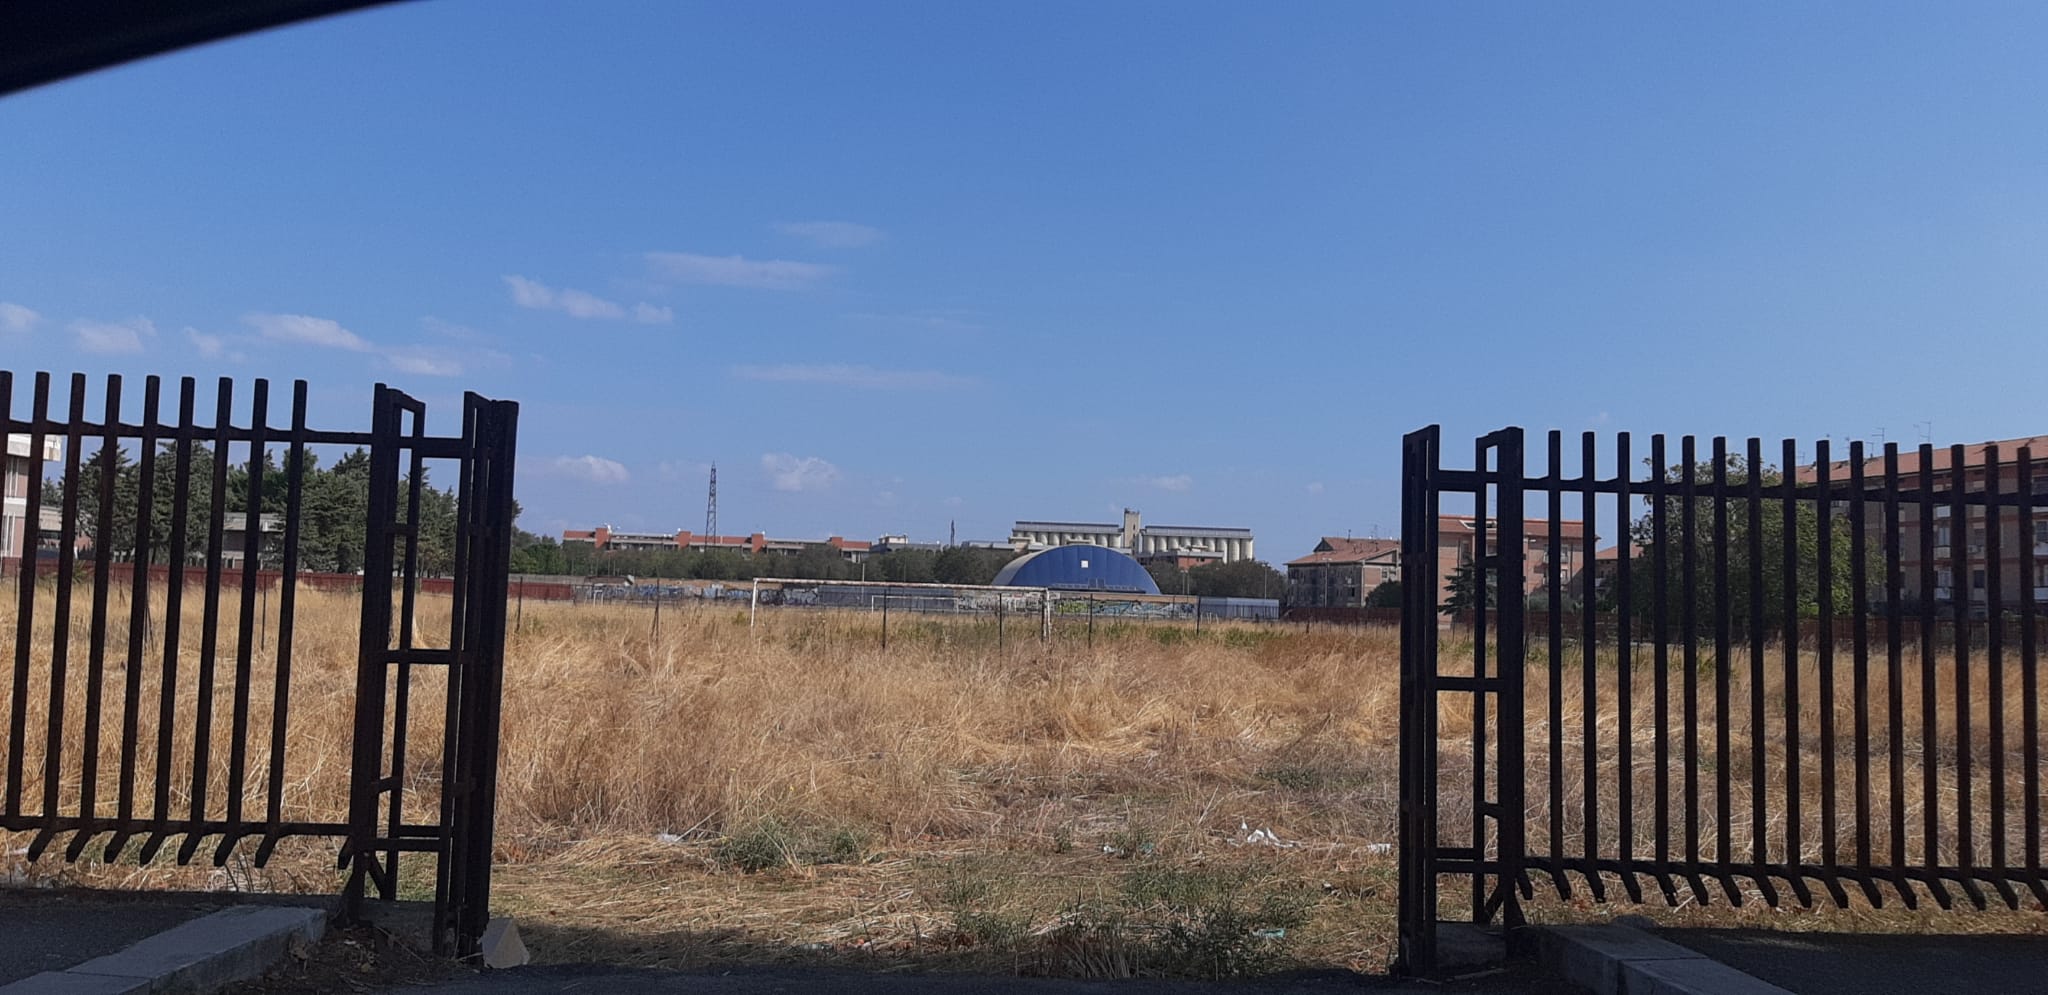 Strade, illuminazione, arredo urbano. Tutto in stato di abbandono, persino un campo di calcio. Il triste destino di via Imperiale a Foggia.